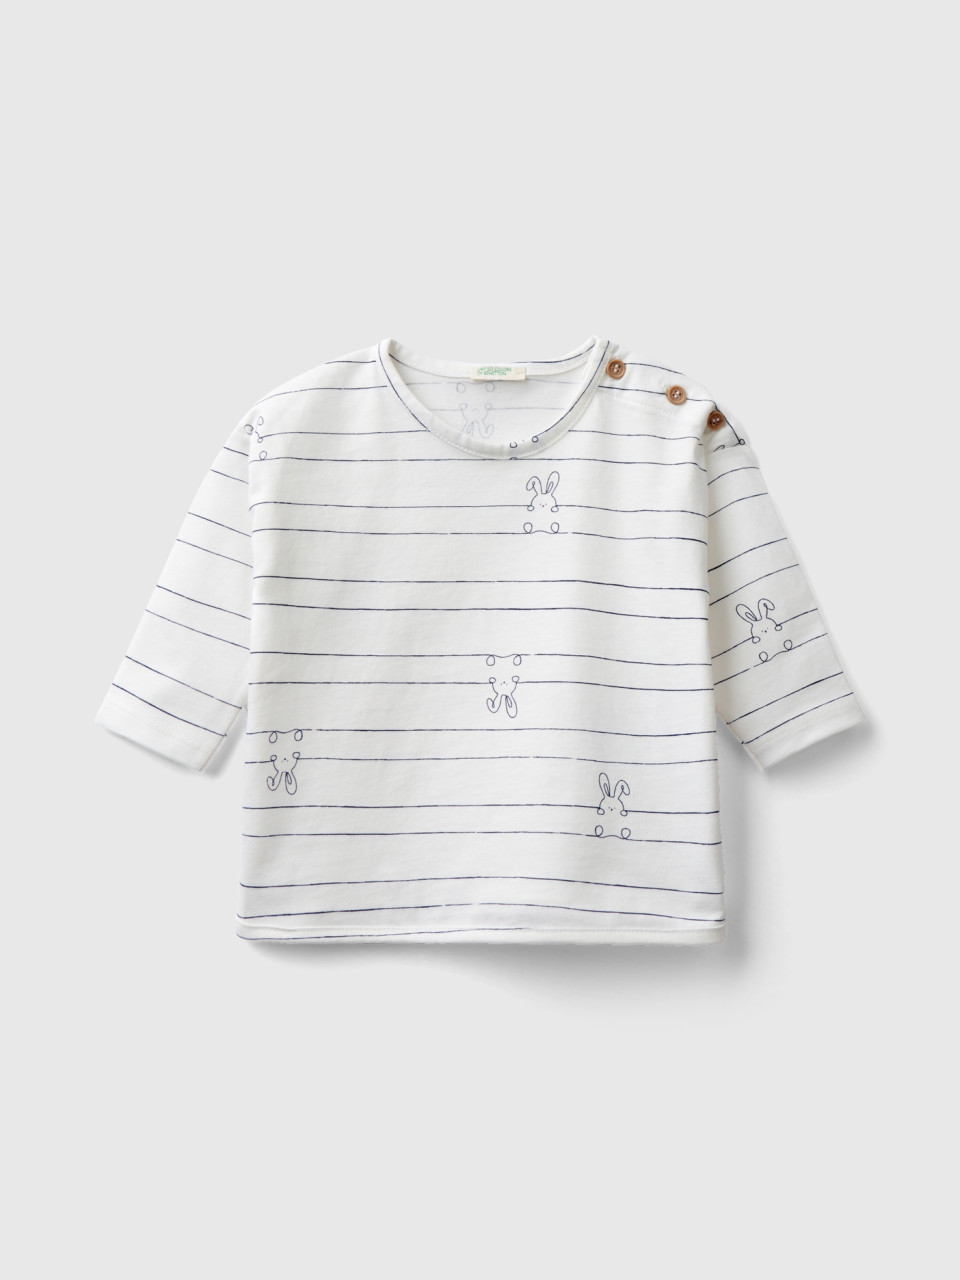 Benetton, Long Sleeve Patterned T-shirt, White, Kids